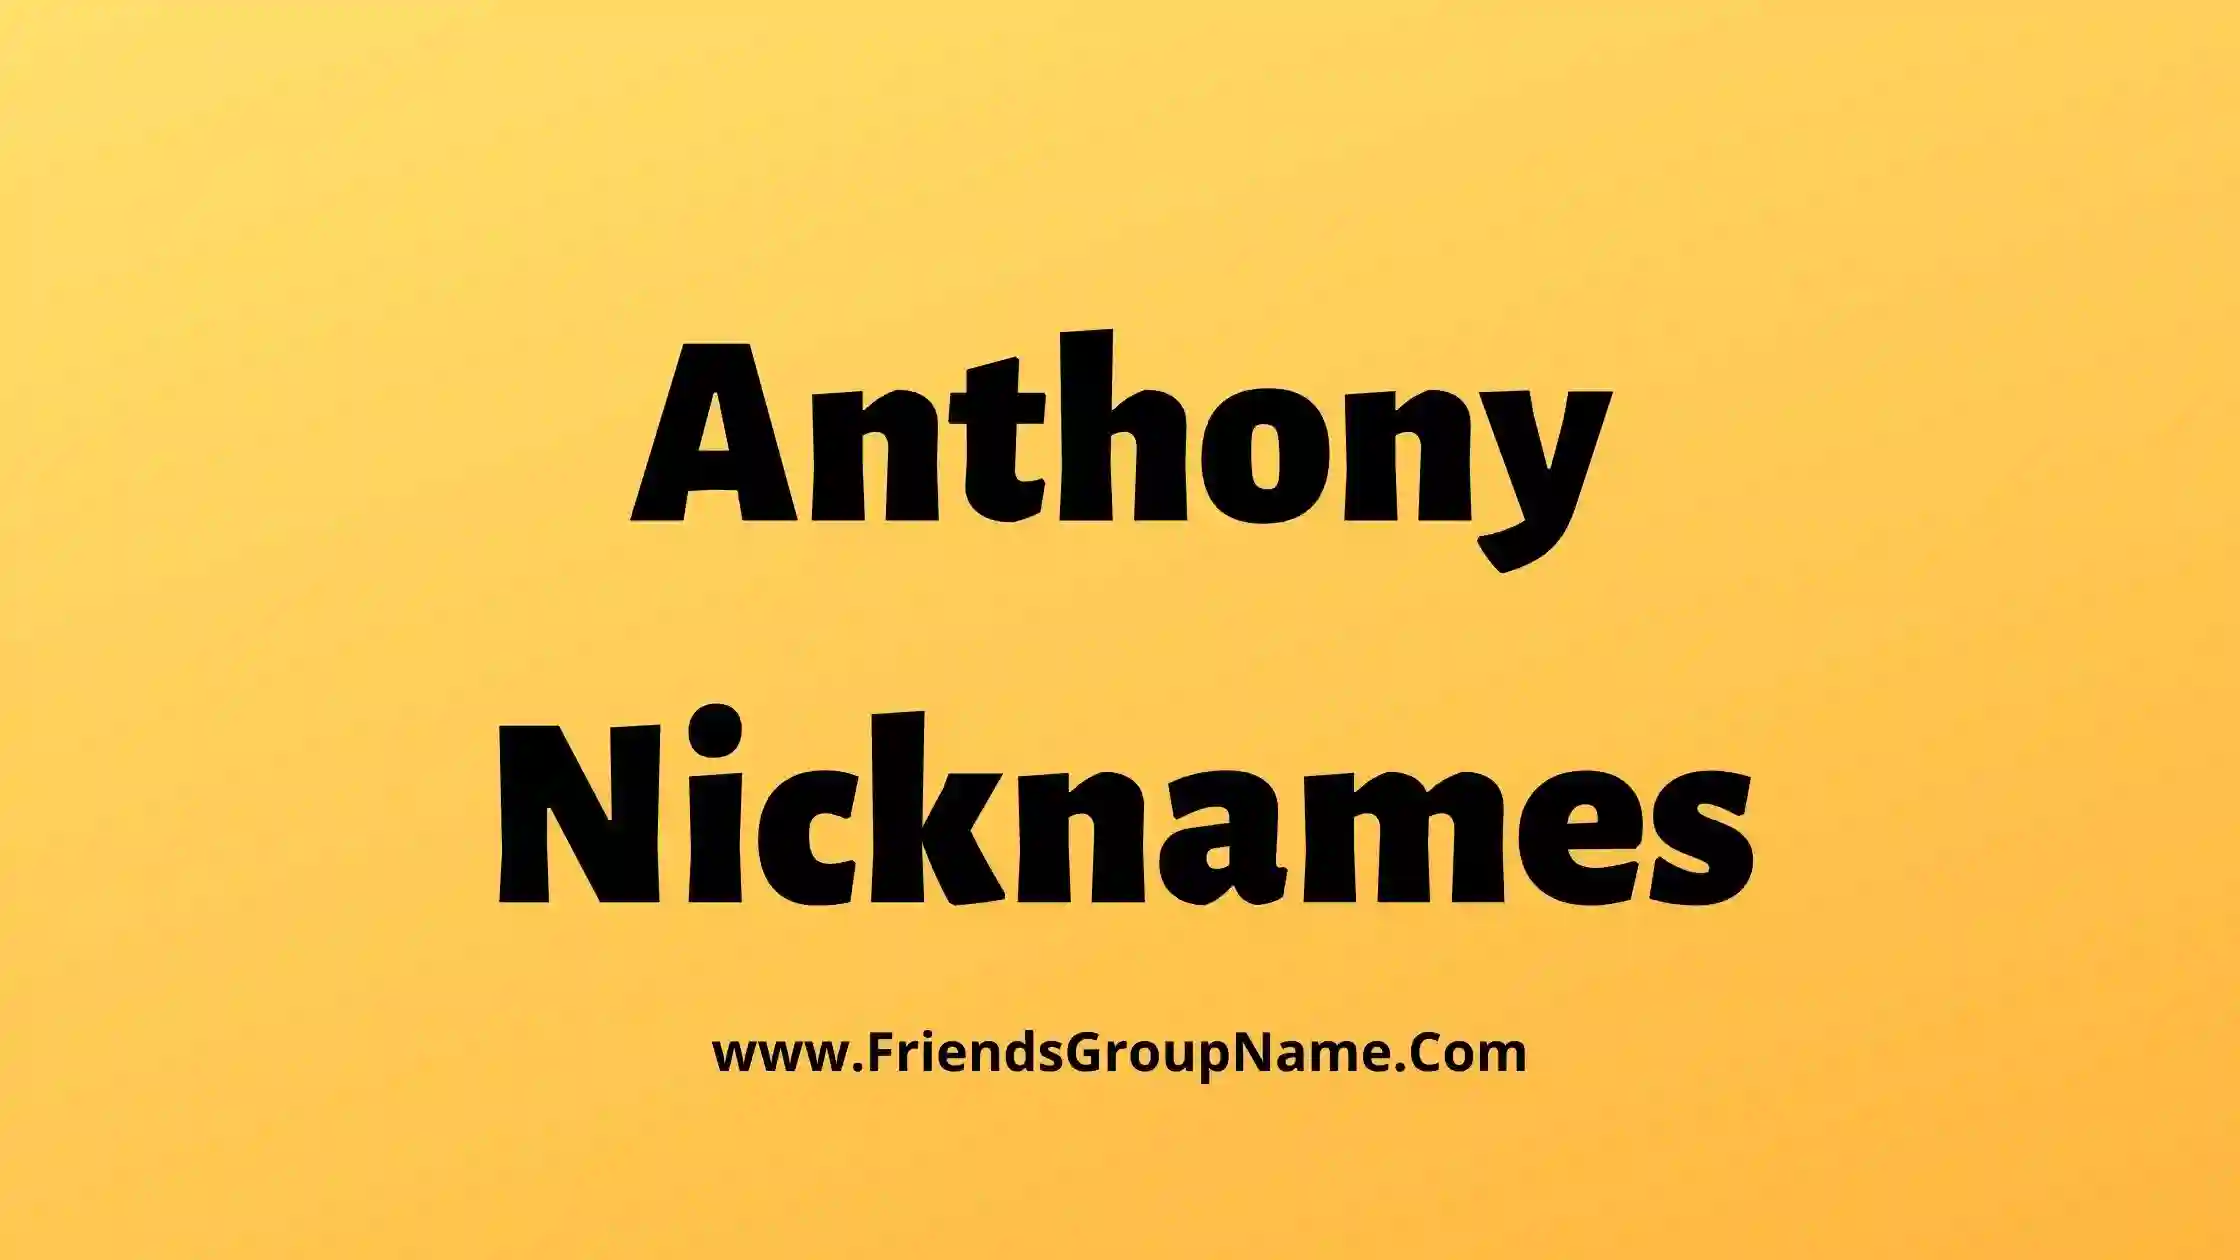 Anthony Nicknames